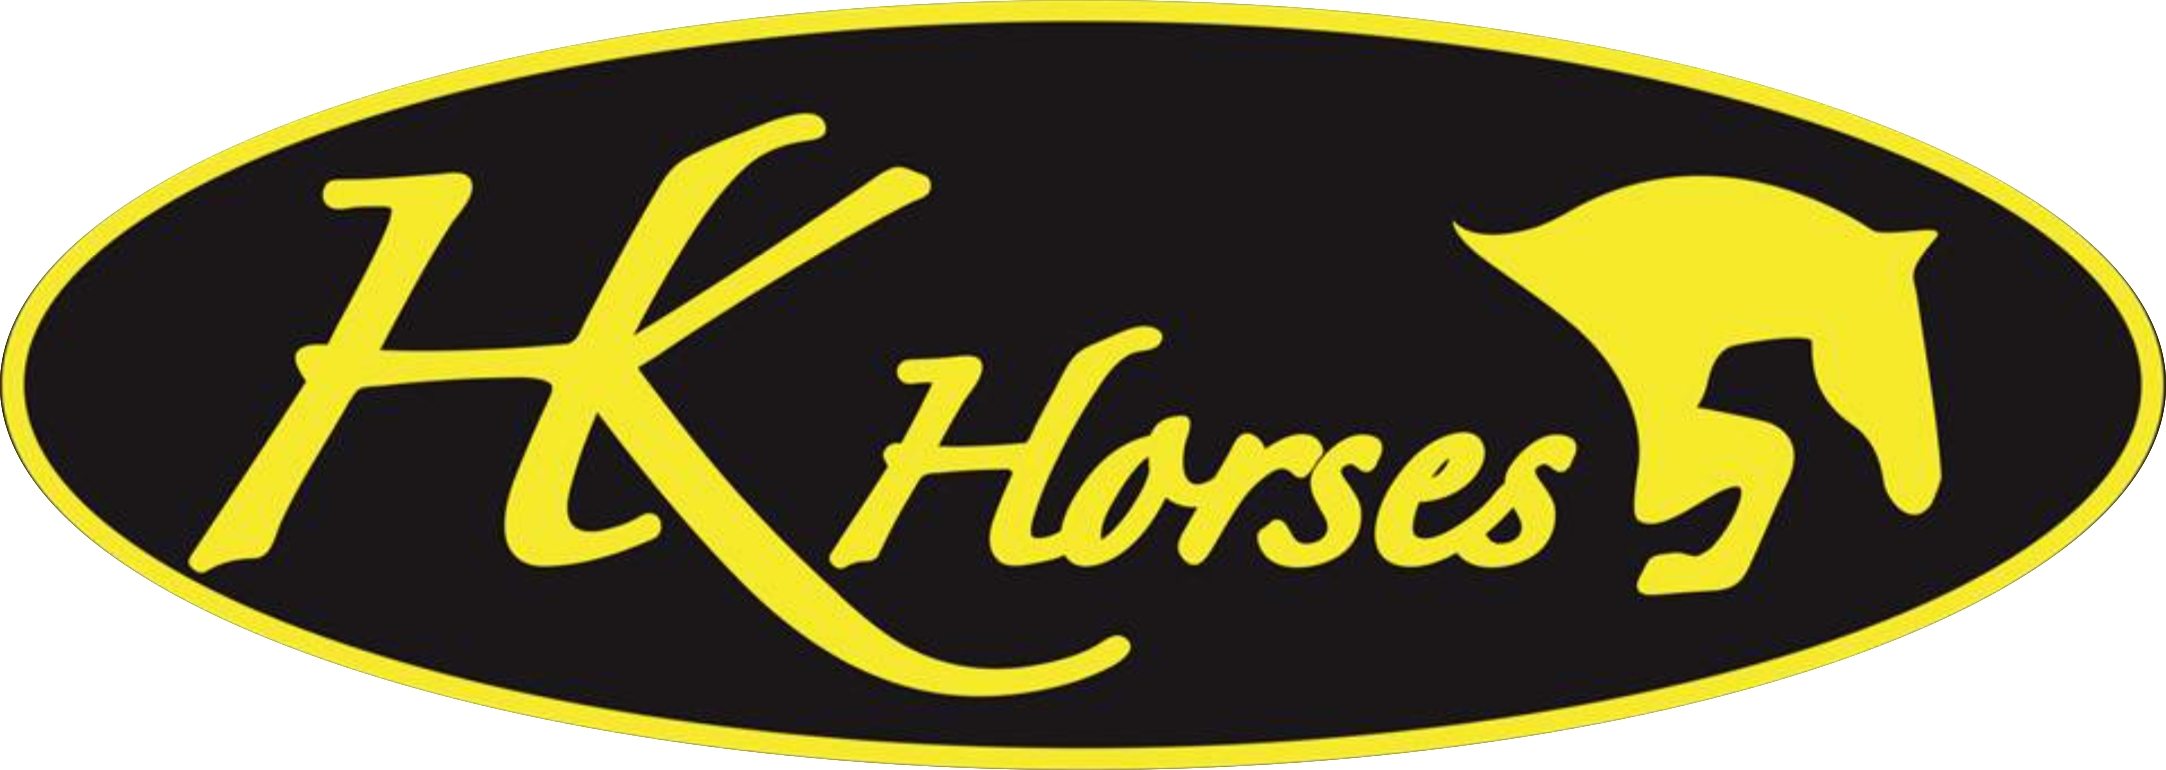 HK Horses